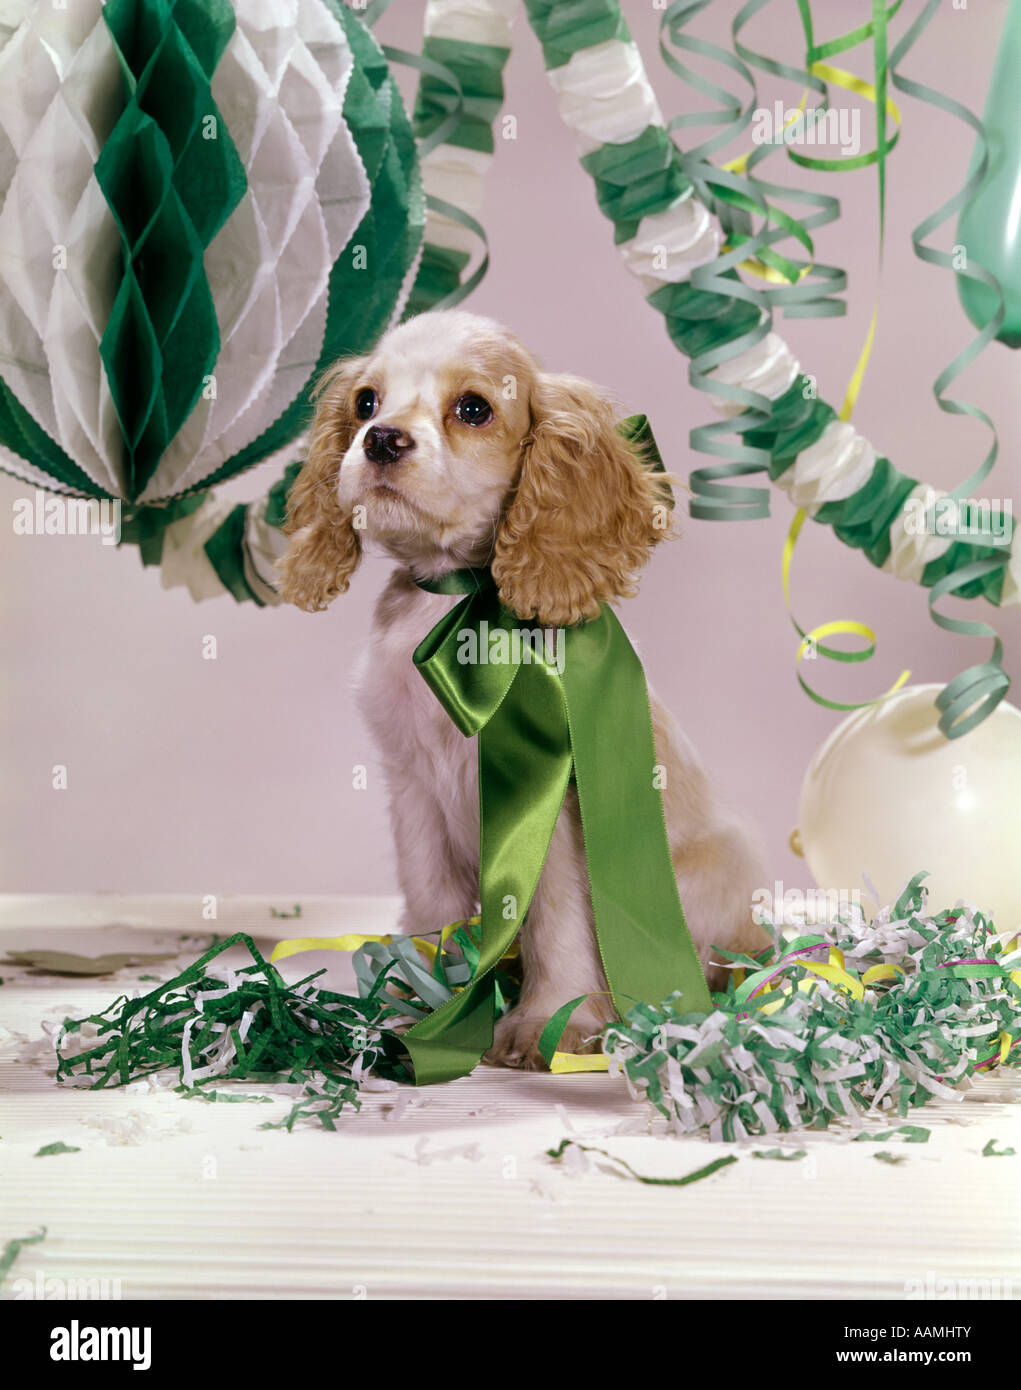 COCKER SPANIEL cucciolo verde grande arco di nastro attorno al collo seduto in mezzo al verde e bianco stelle filanti e coriandoli retrò del cane Foto Stock